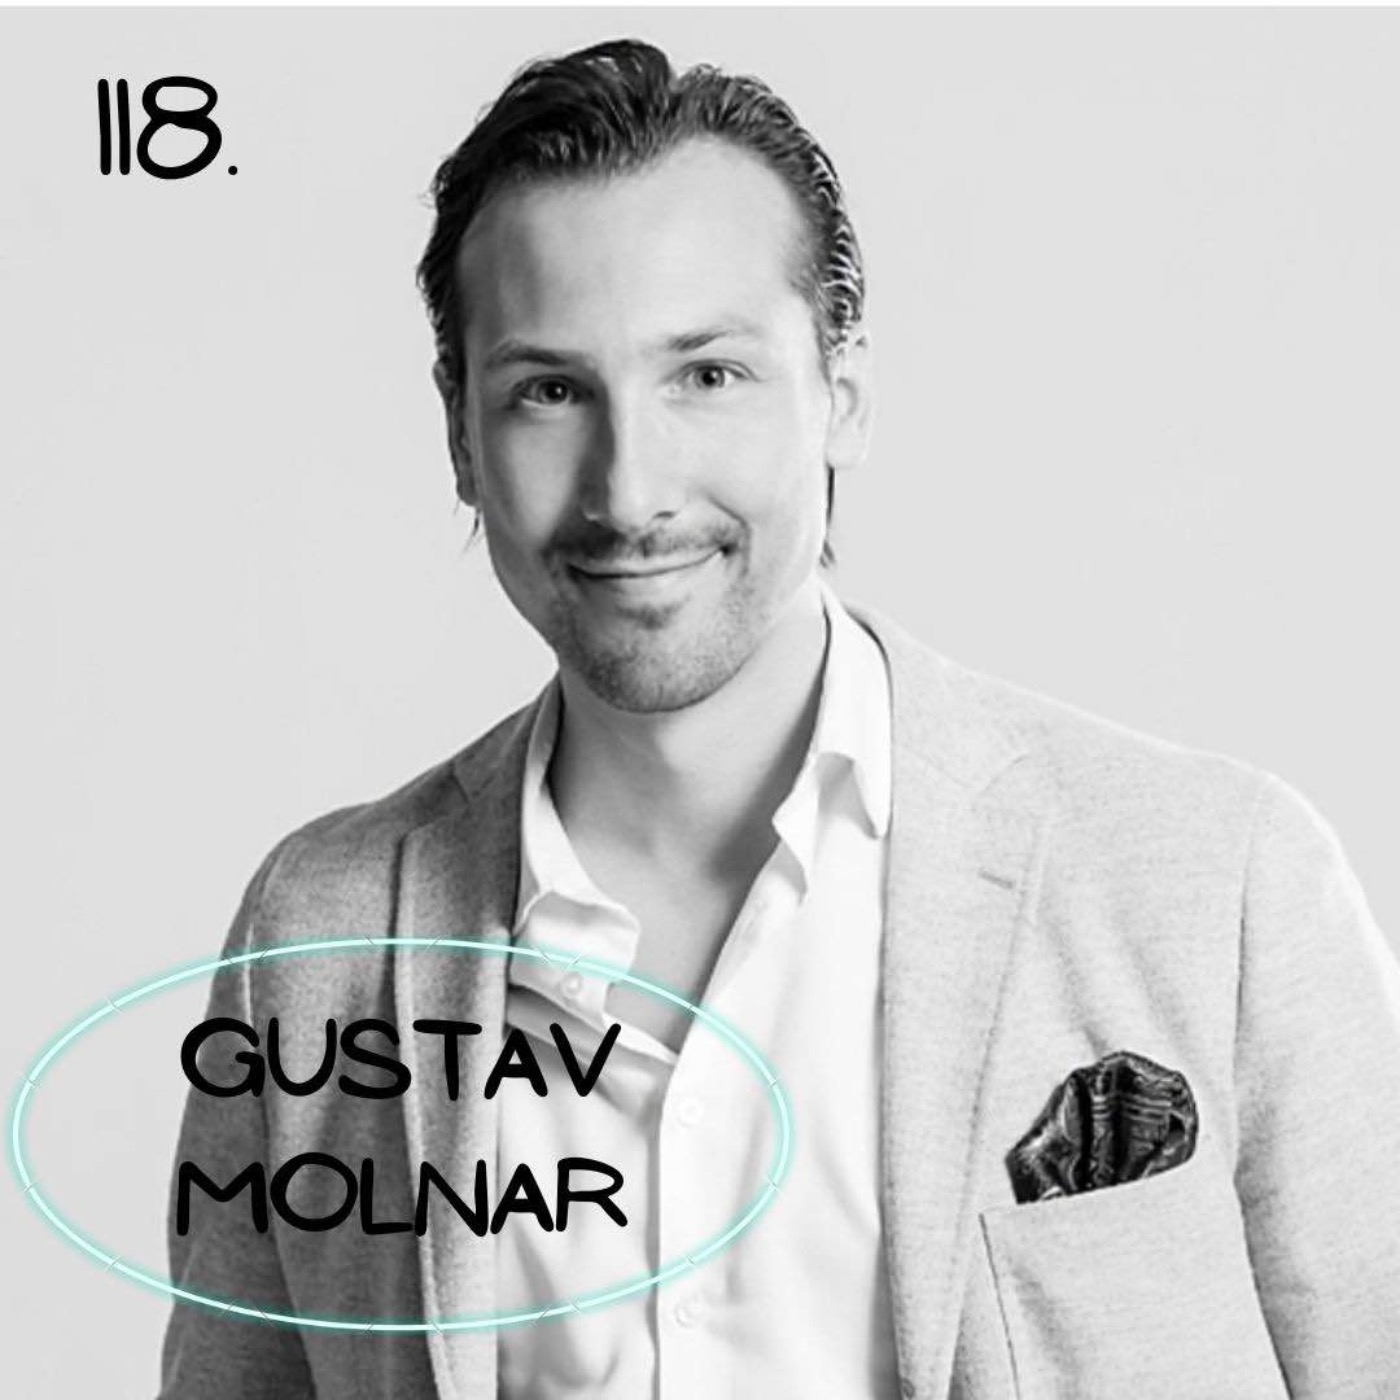 118. Gustav Molnar - Använd dina superkrafter